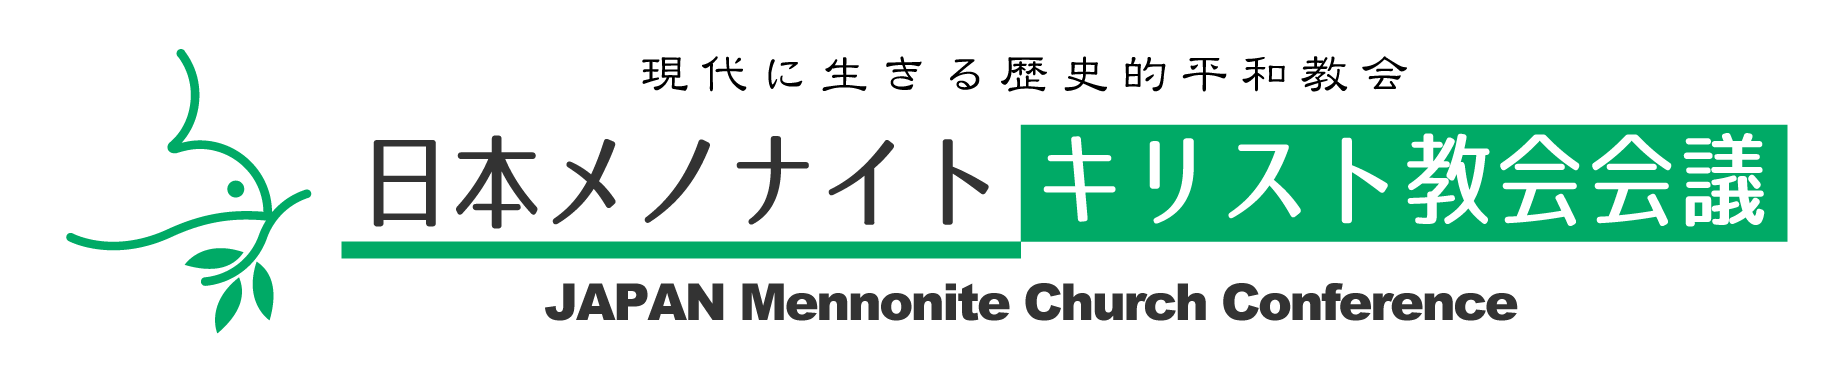 日本メノナイト・教会会議